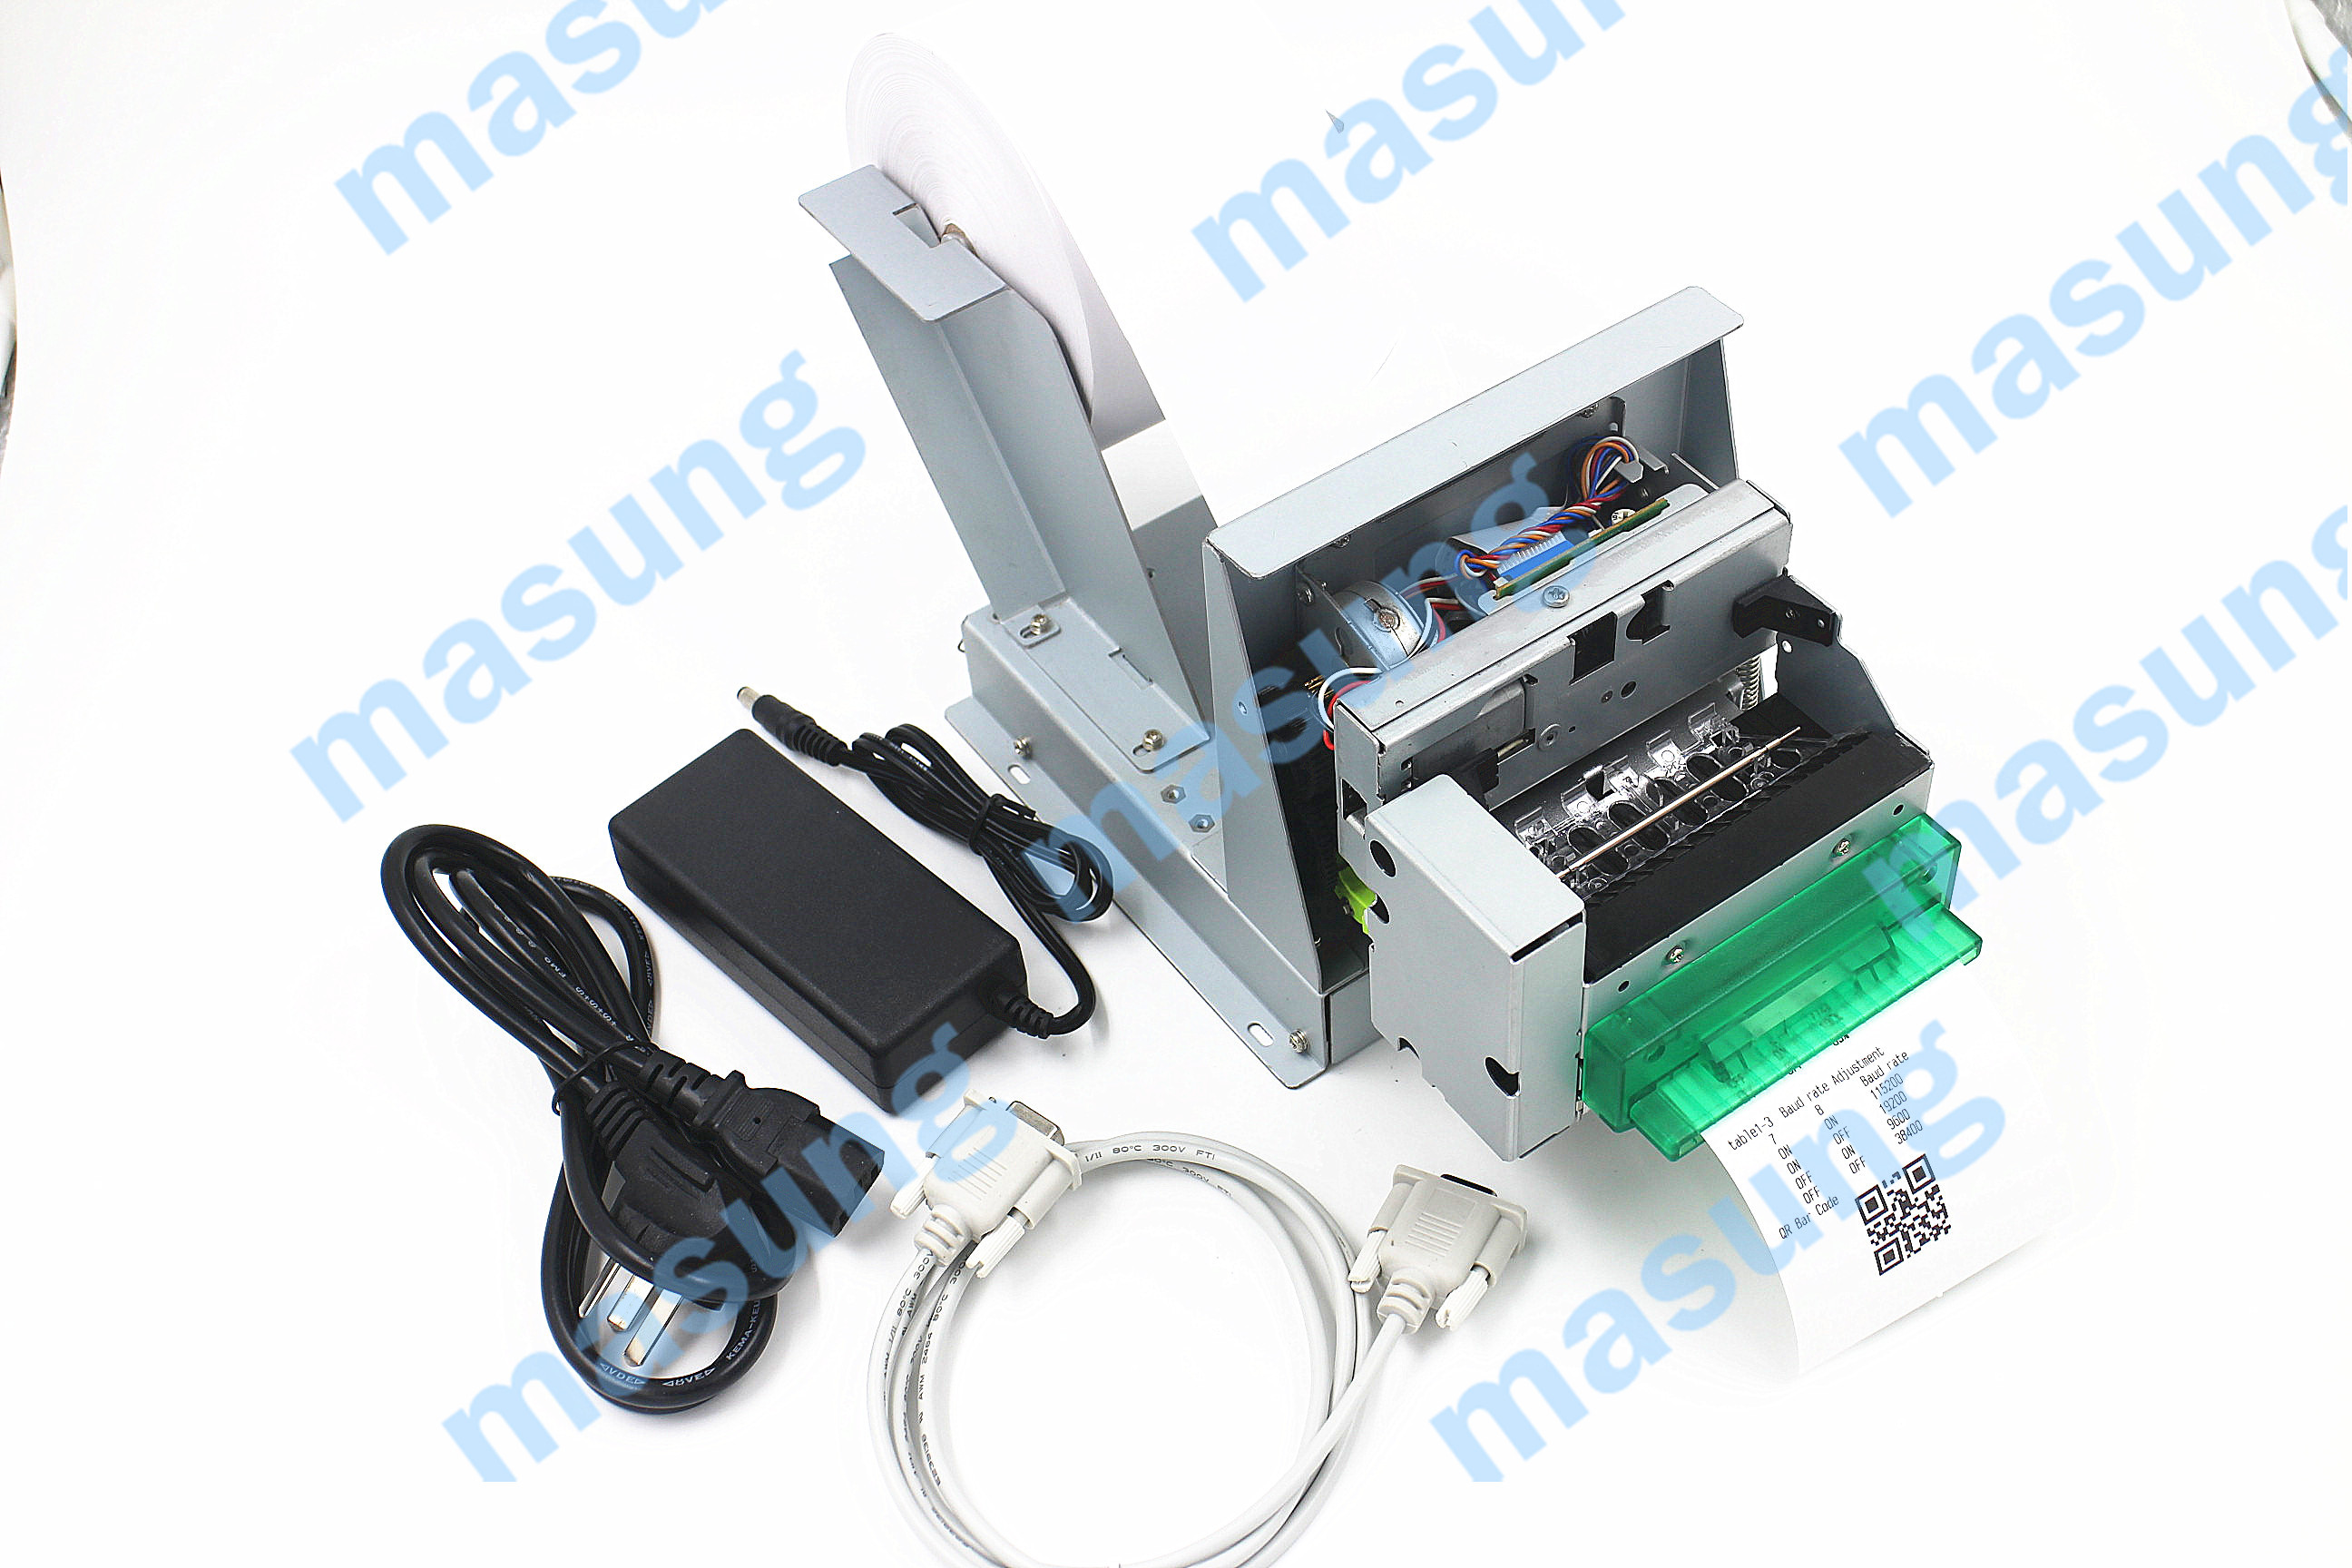 MS-T850 3 inch kiosk printer 